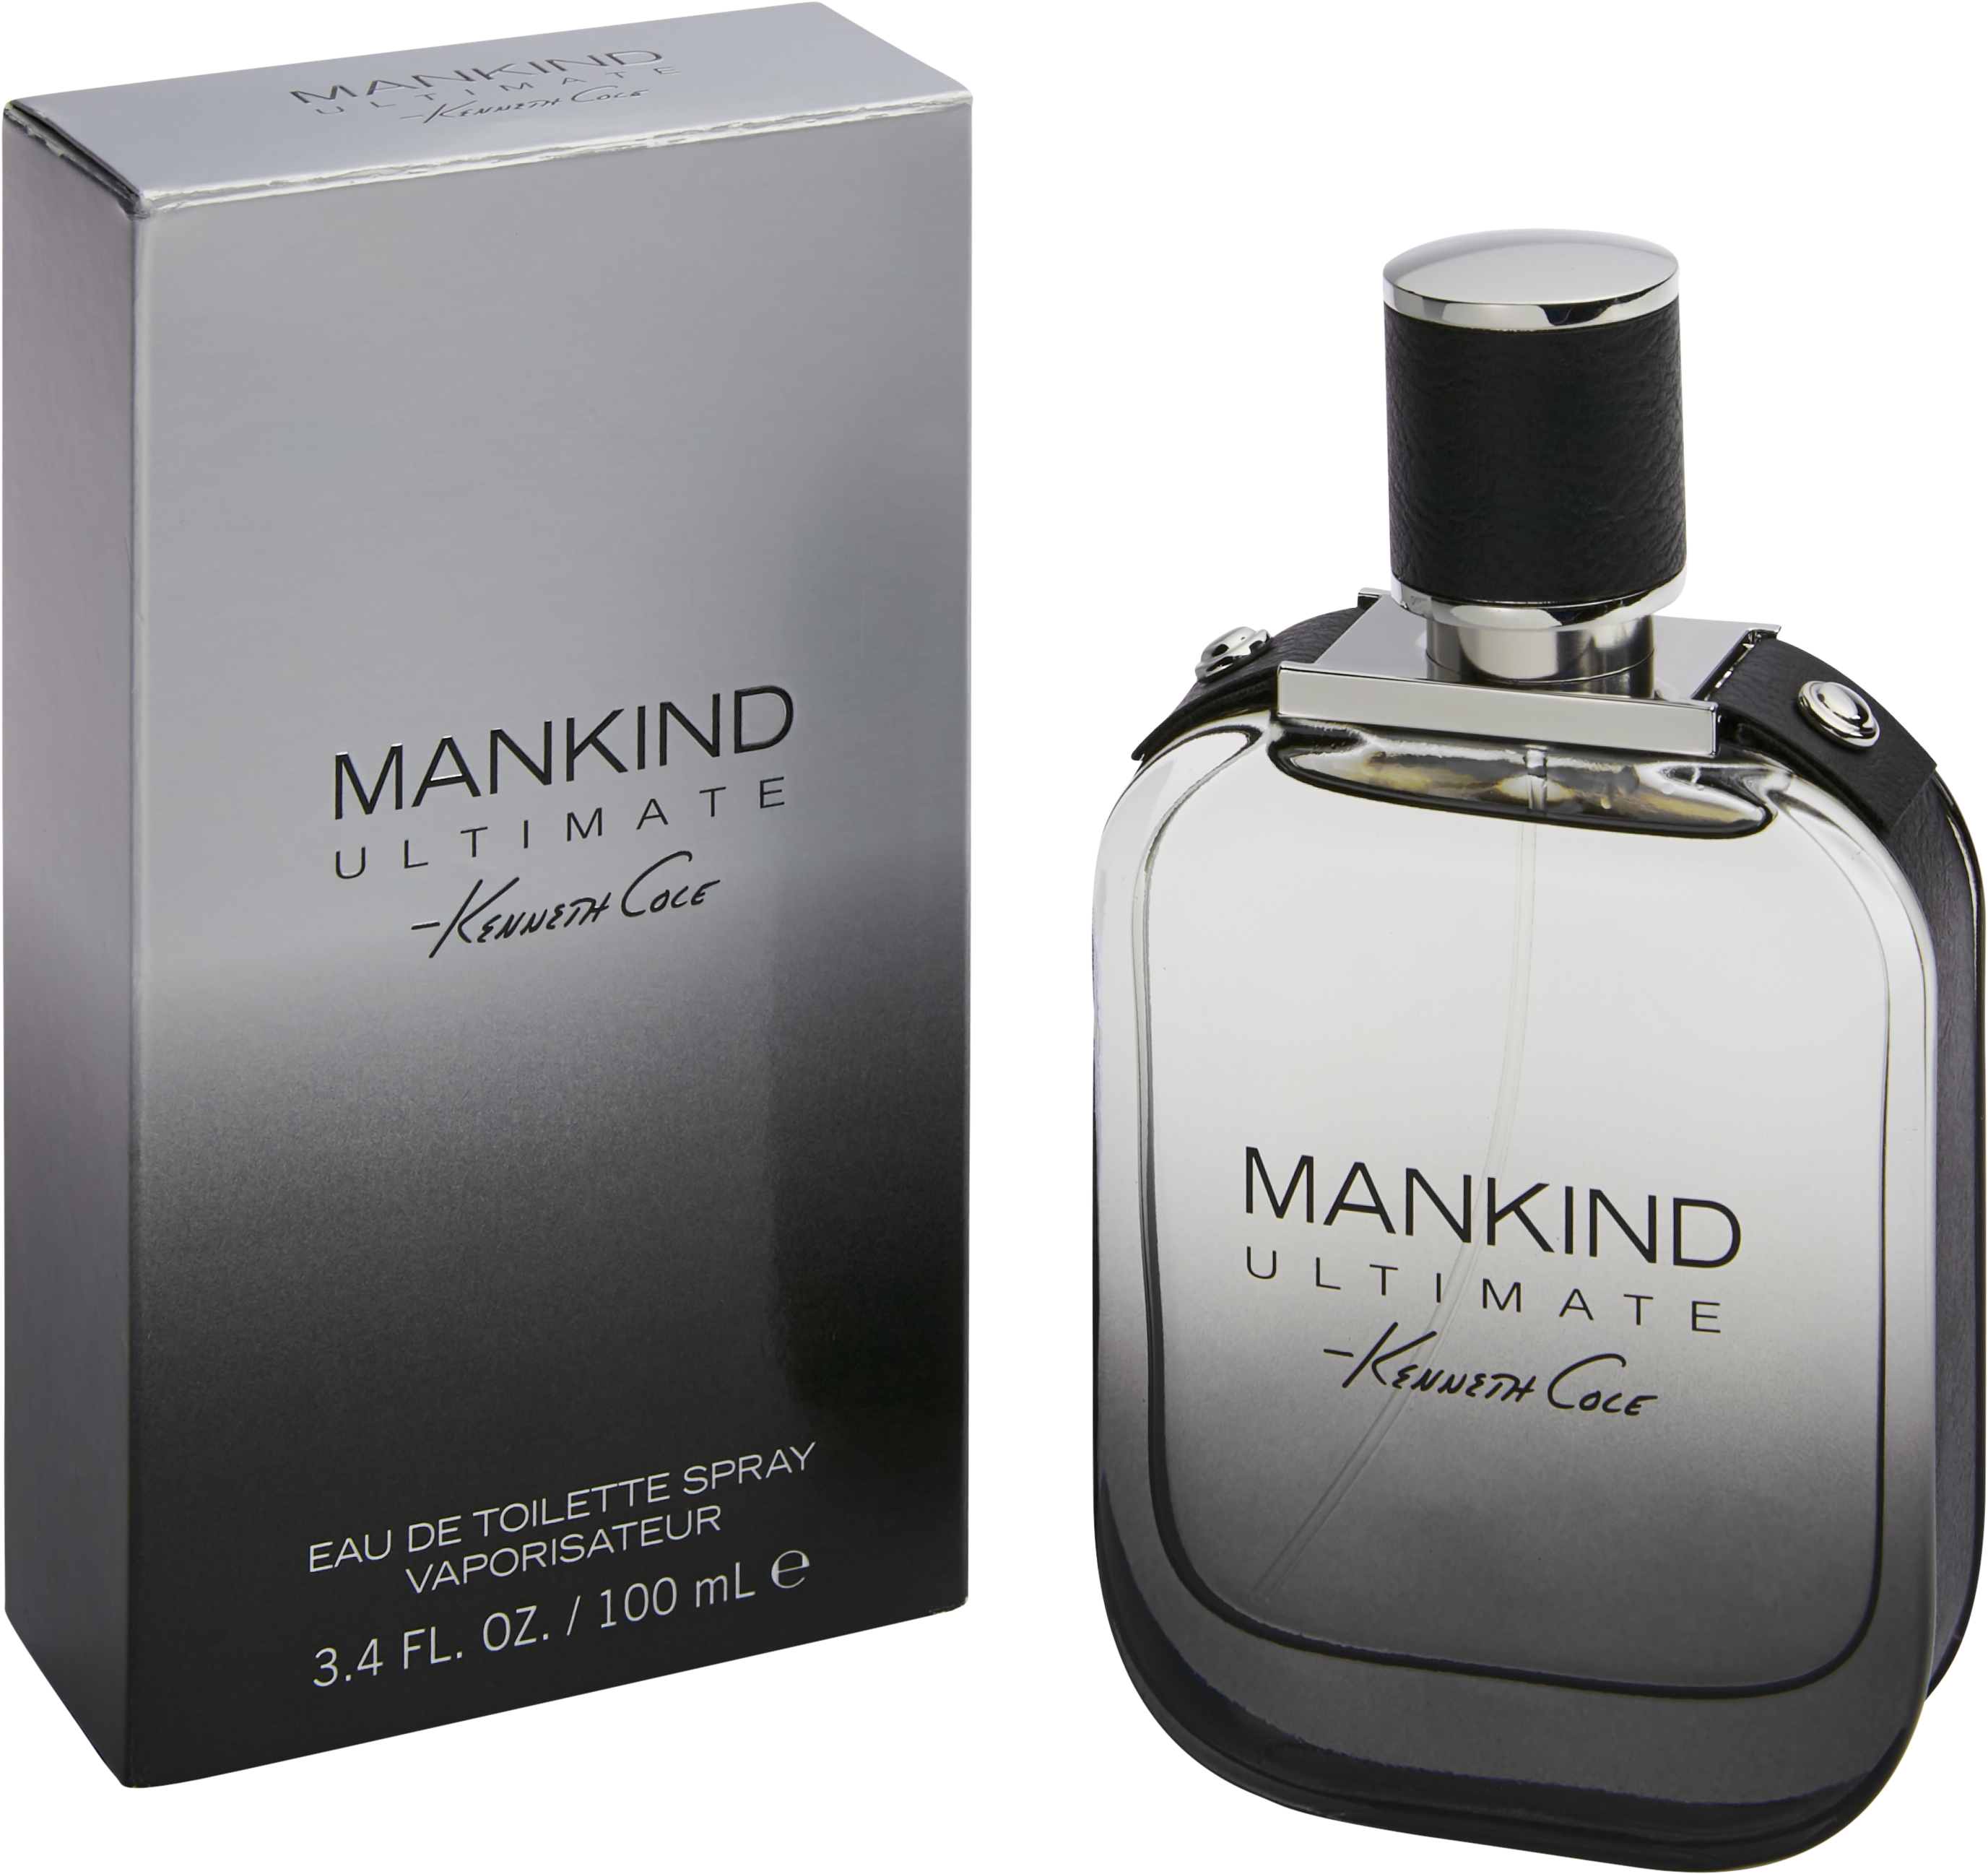 Kenneth Cole Mankind Ultimate Eau de Toilette, 3.4 oz. - Men's ...